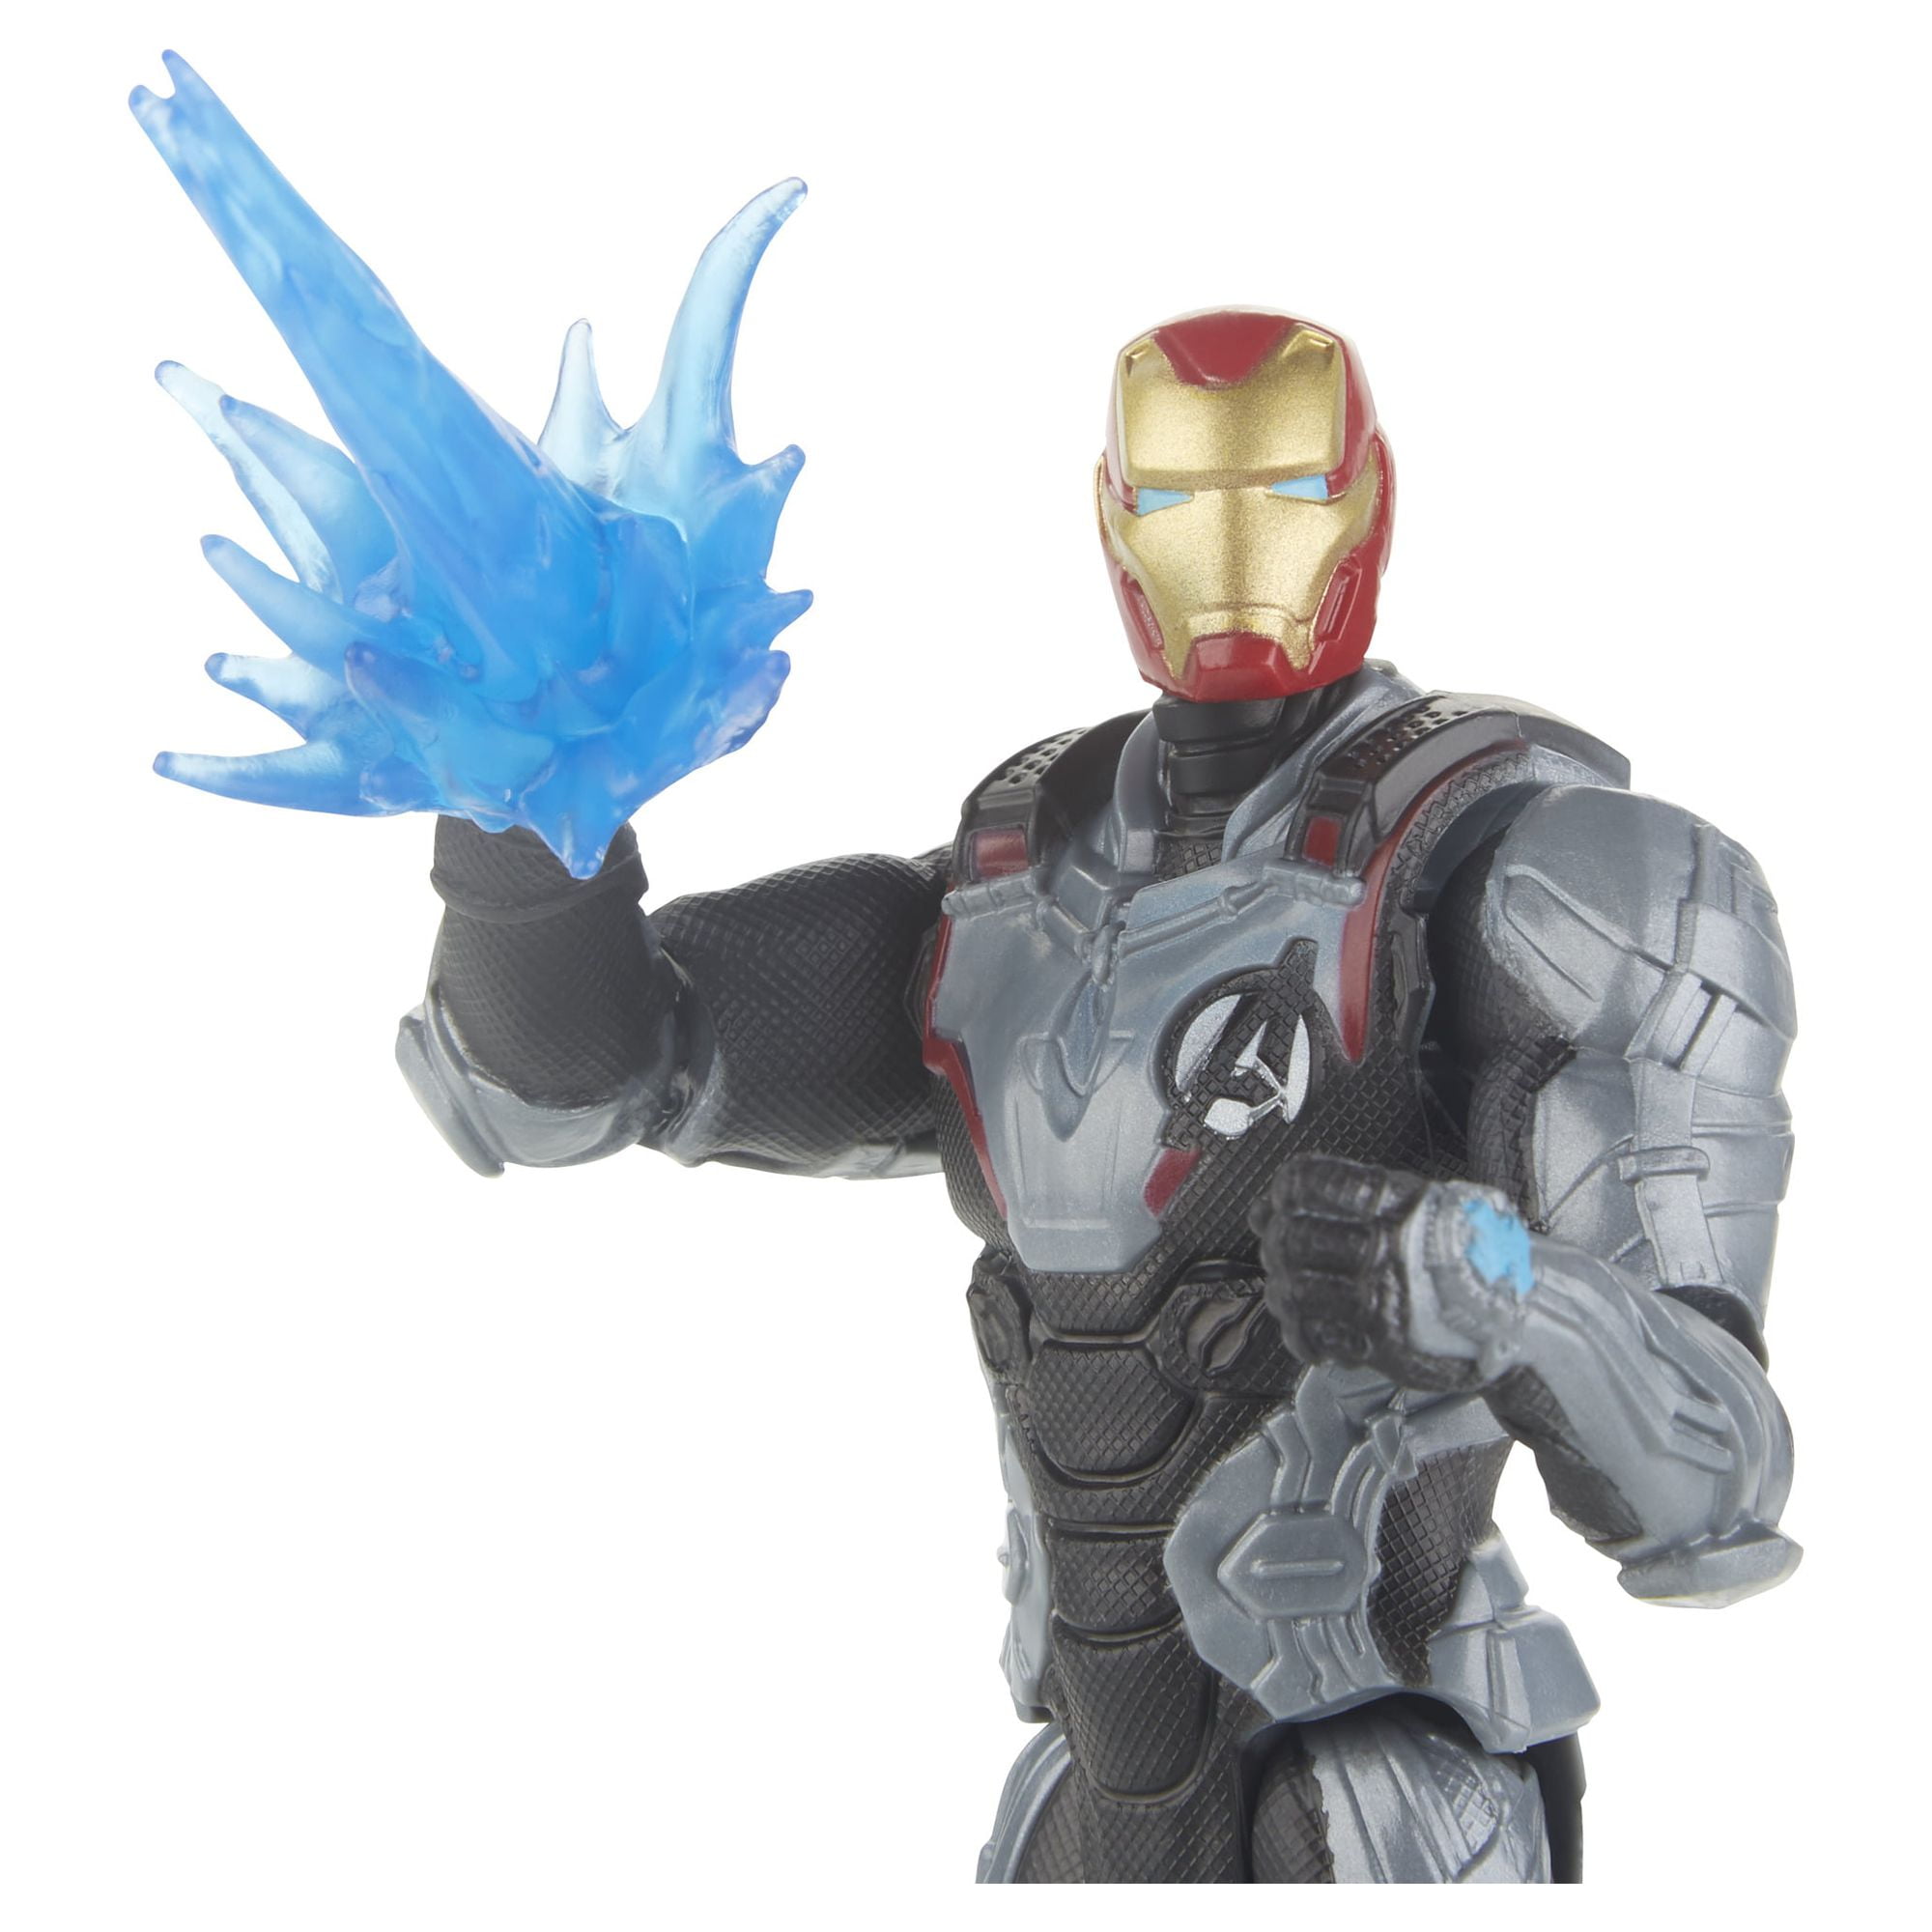 Buy Marvel Avengers Endgame Iron Man : Mark 50